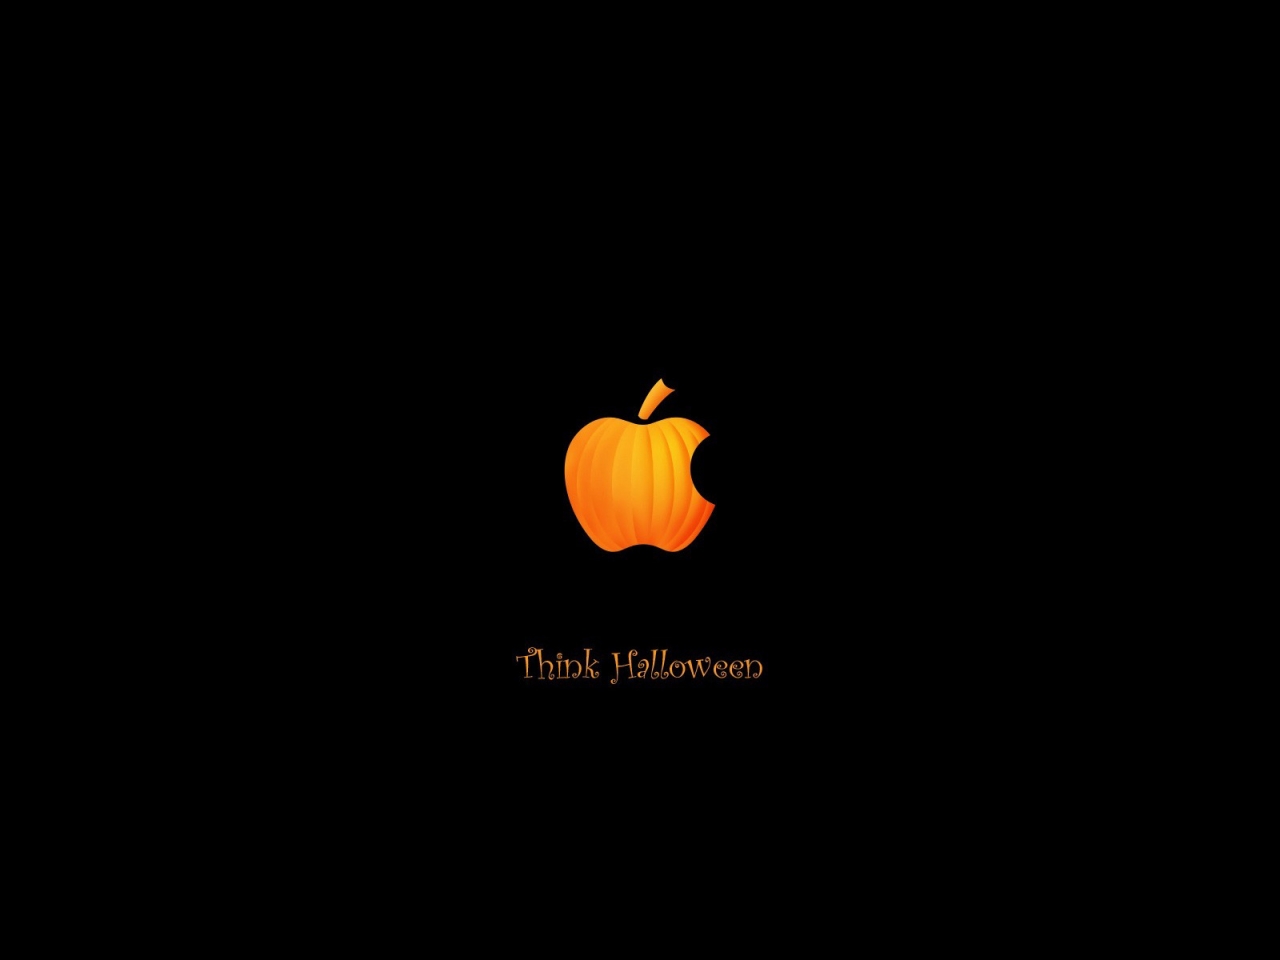 Pumpkin Apple for 1280 x 960 resolution